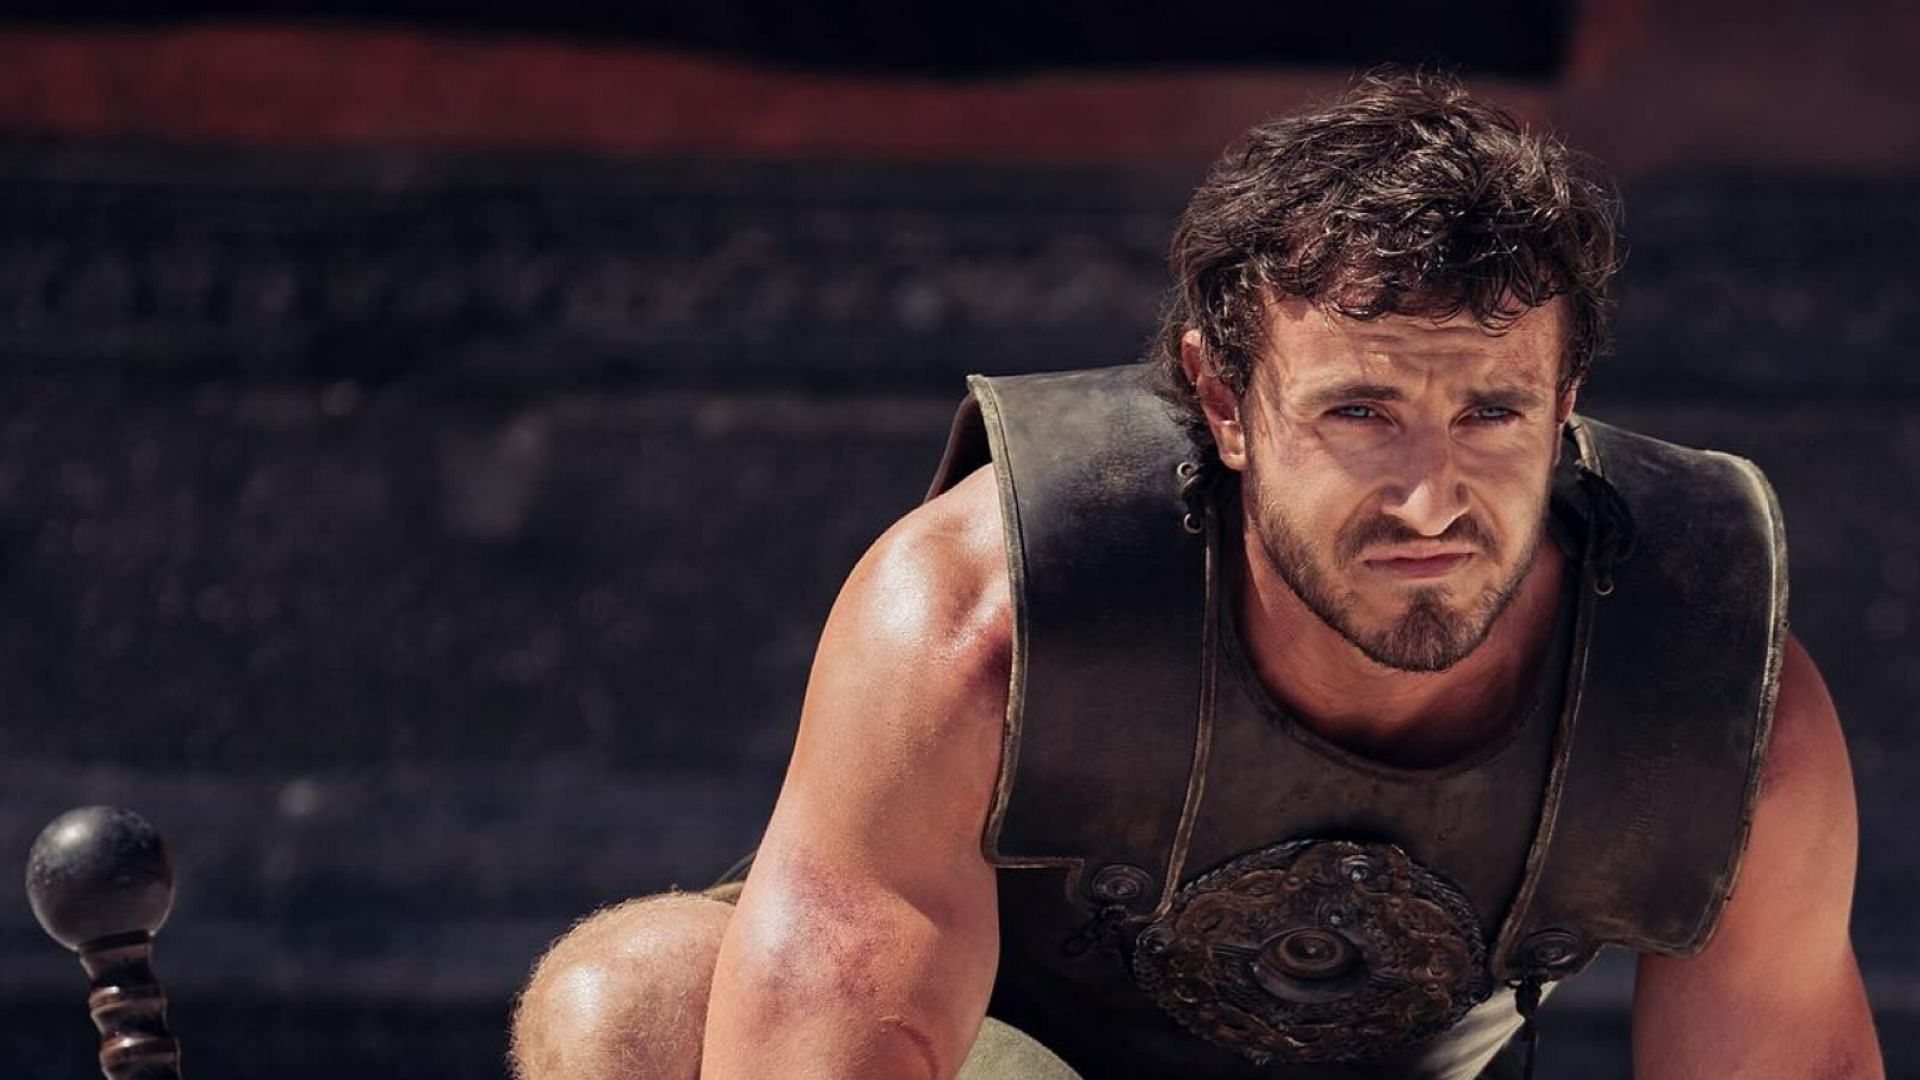 A first look at Paul Mescal in Gladiator 2 (image via Instagram/@vanityfair)